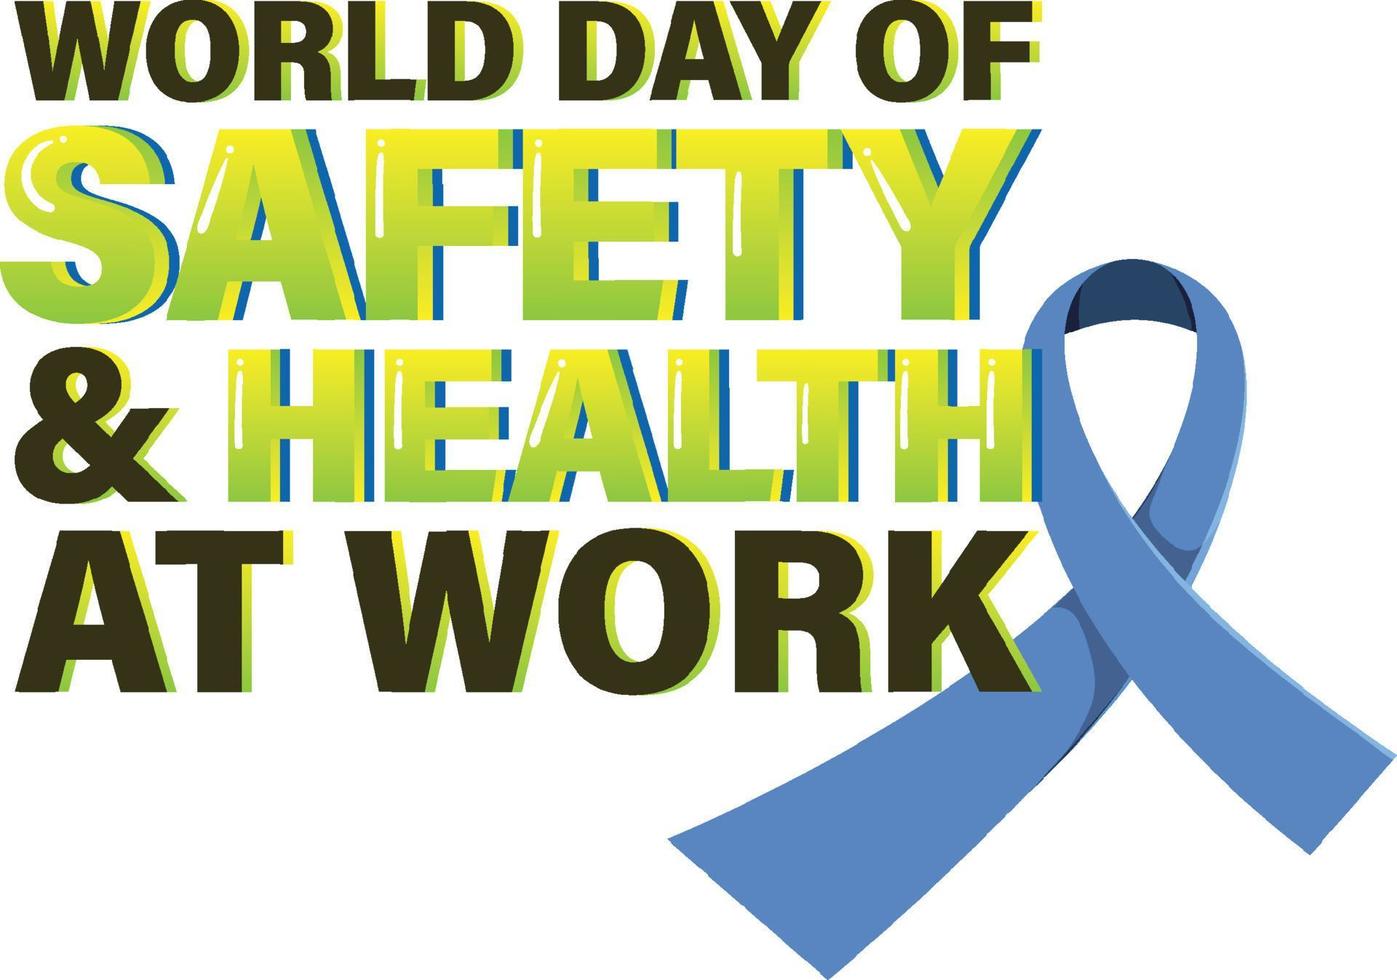 världsdagen för säkerhet och hälsa på jobbet logotypdesign vektor